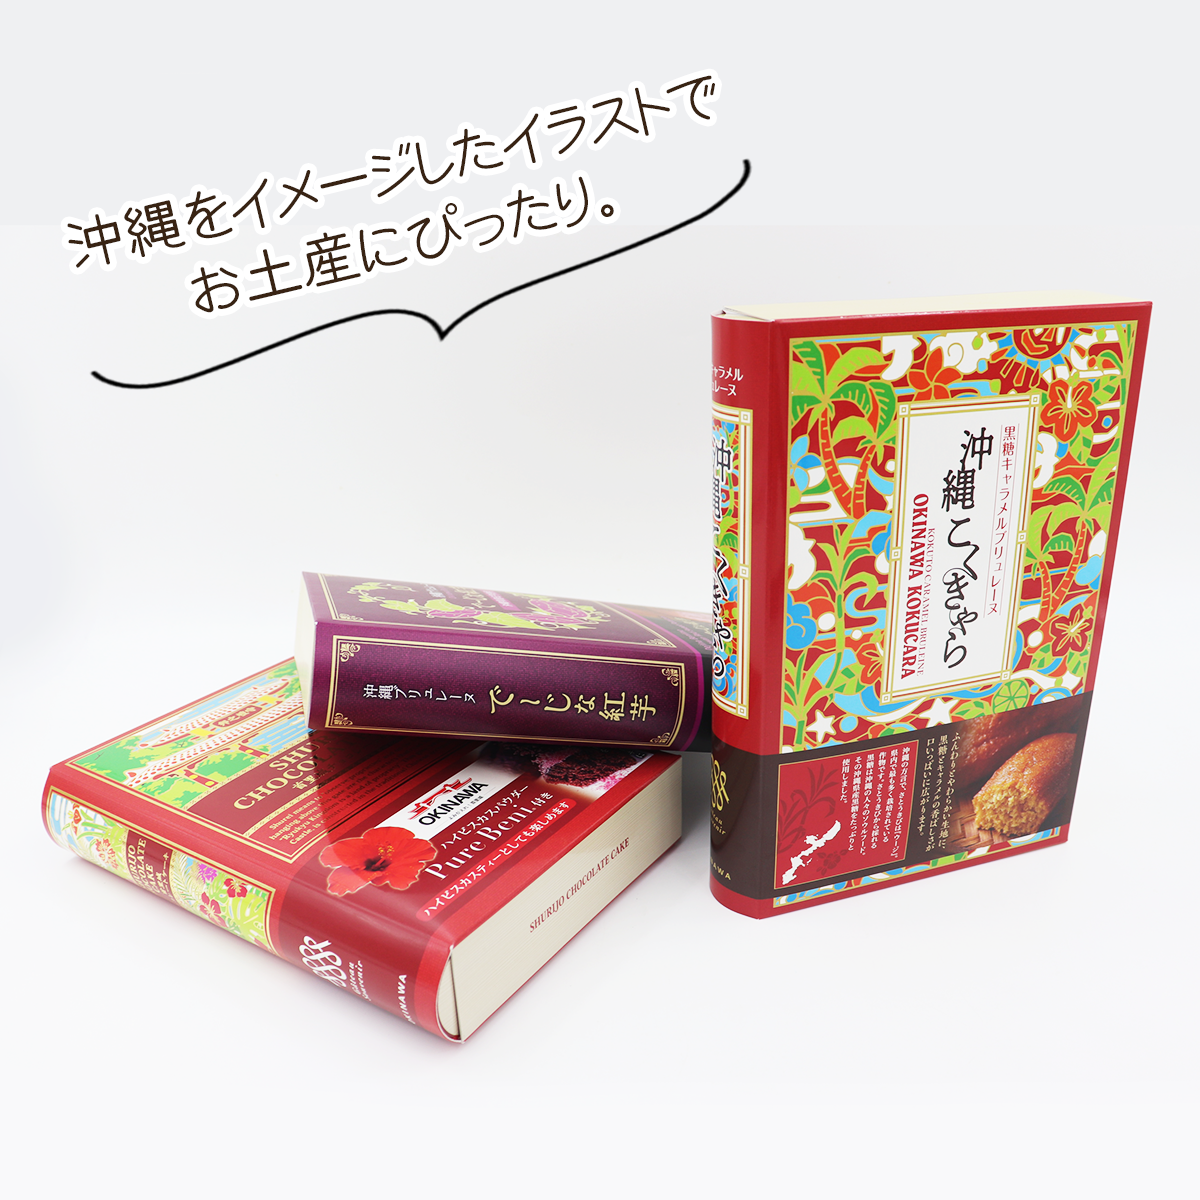 新しい沖縄土産。BOOK型お菓子。沖縄をイメージしたイラストが描かれています。